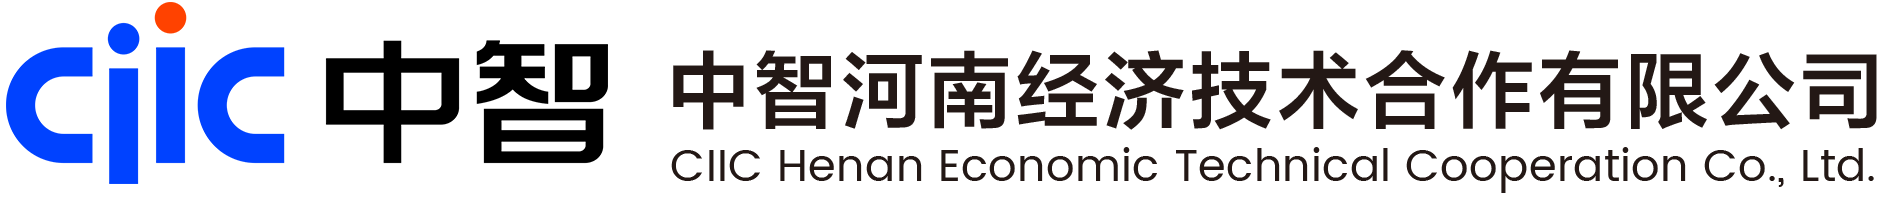 中智河南经济技术合作有限公司